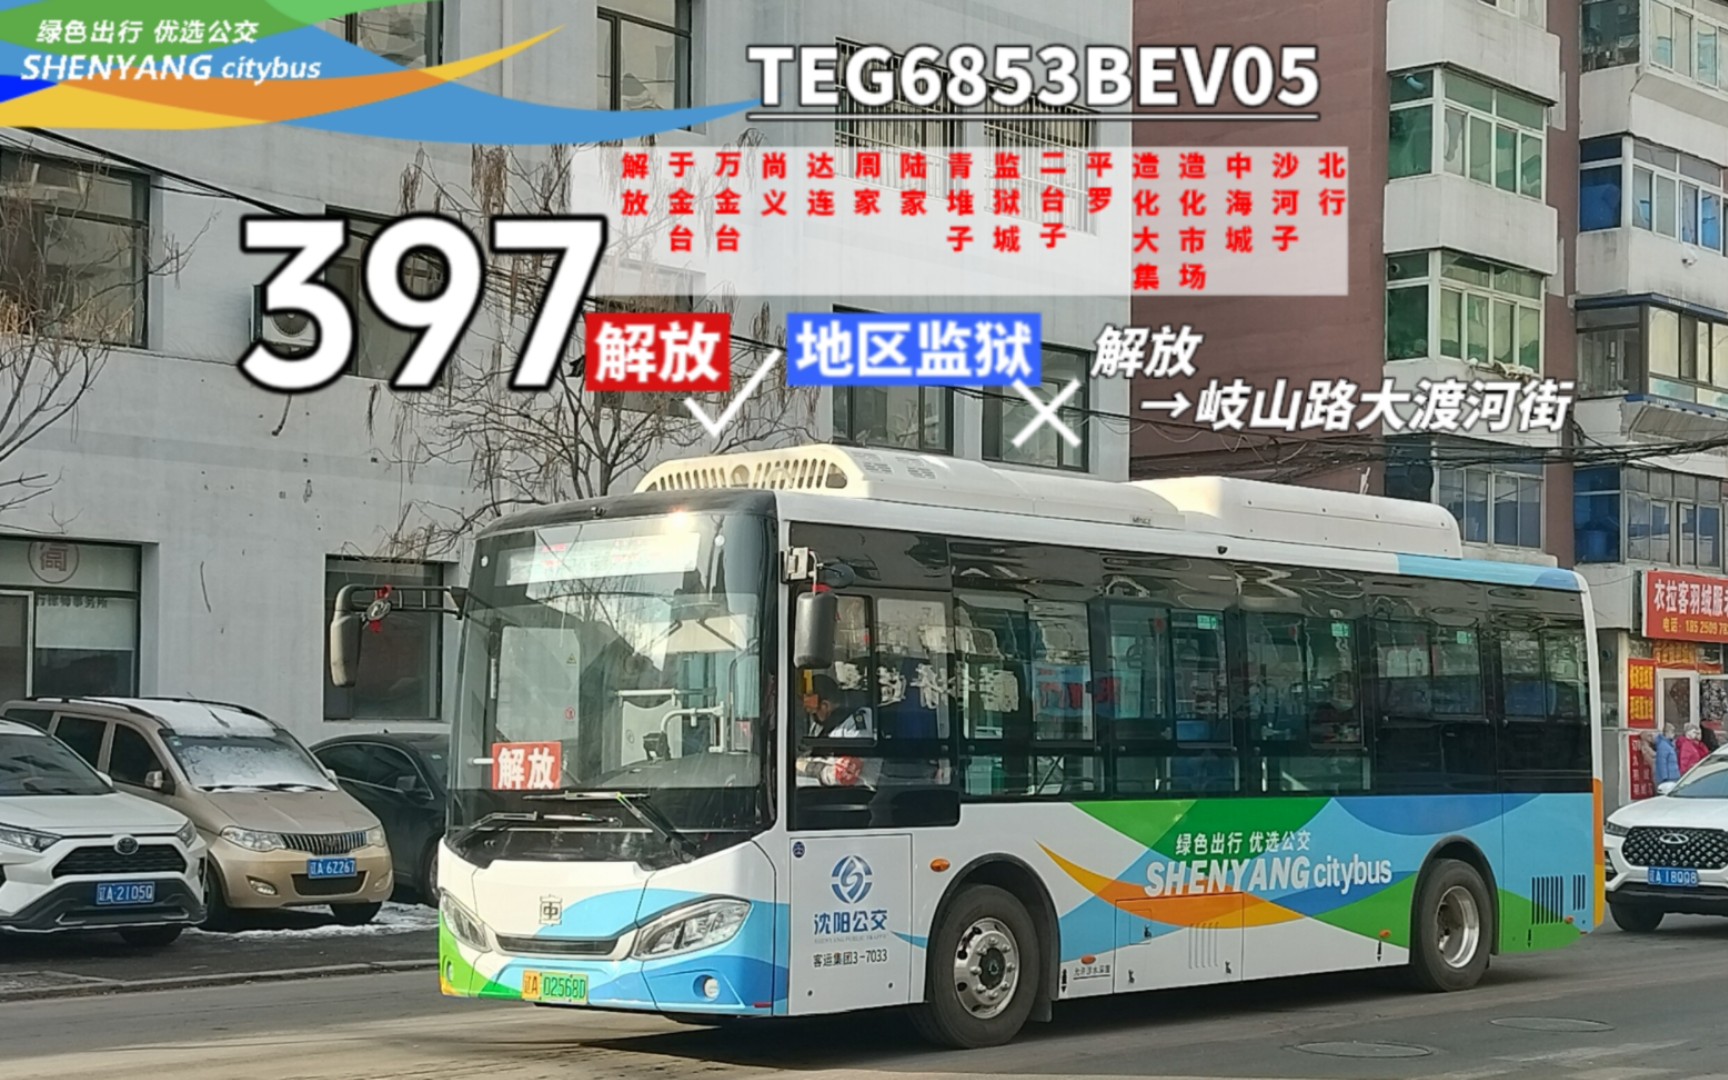 沈阳245路公交车图片